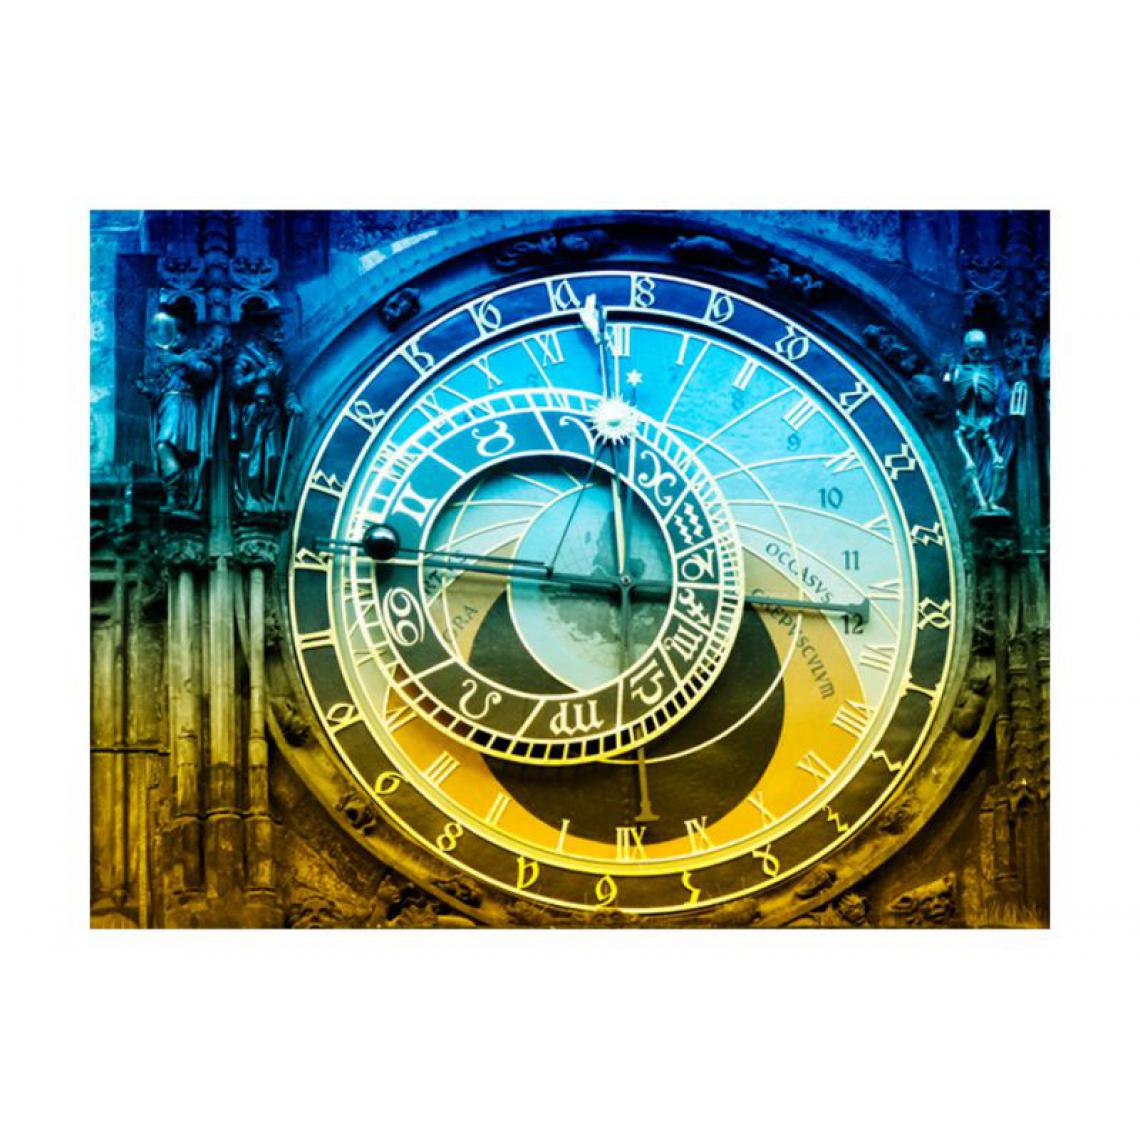 Artgeist - Papier peint - Horloge astronomique de Prague .Taille : 350x270 - Papier peint